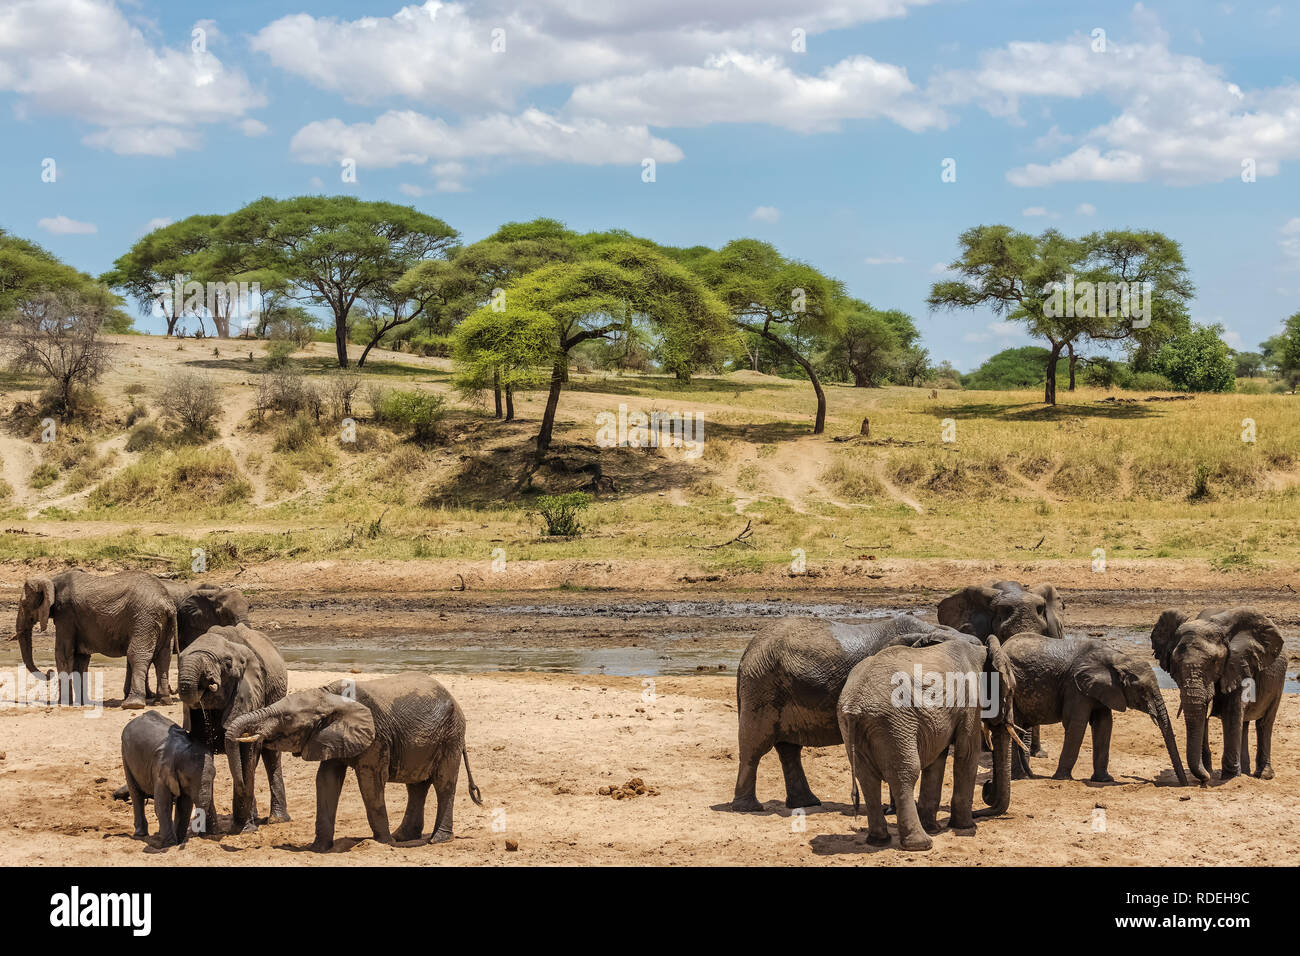 Der Elefant ist das größte Land Säugetier. Mit seinen Stamm, es kann nicht nur riechen, sondern auch fühlen und begreifen. Elefanten haben einen ausgeprägten Sozialverhalten und Stockfoto